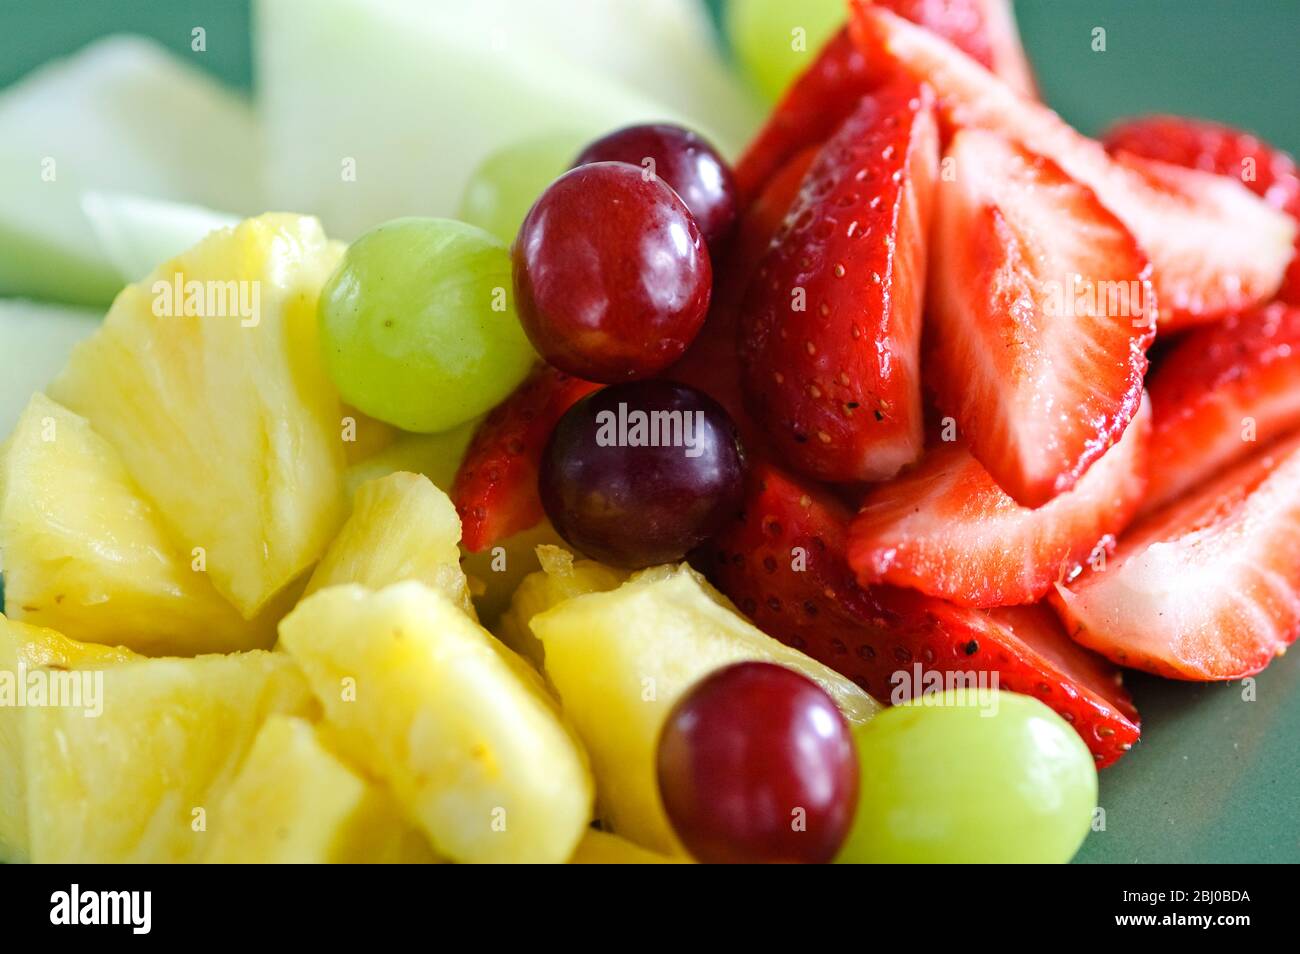 Frischer Obstsalat auf grünem Teller - Stockfoto